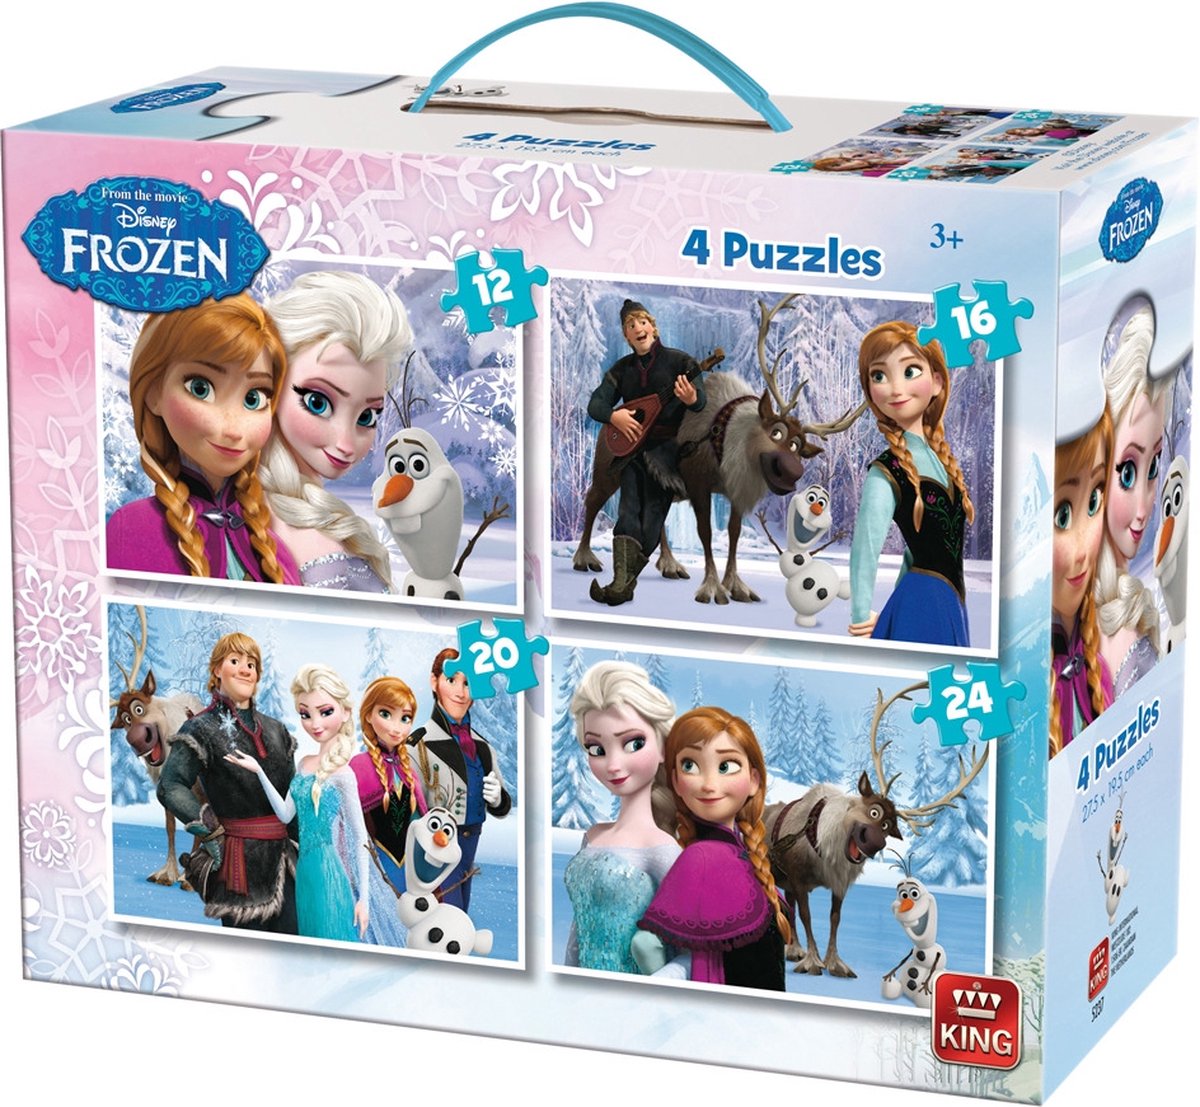 Disney Frozen Puzzel - 4-in-1 koffer - 12, 16, 20 & 24 stukjes